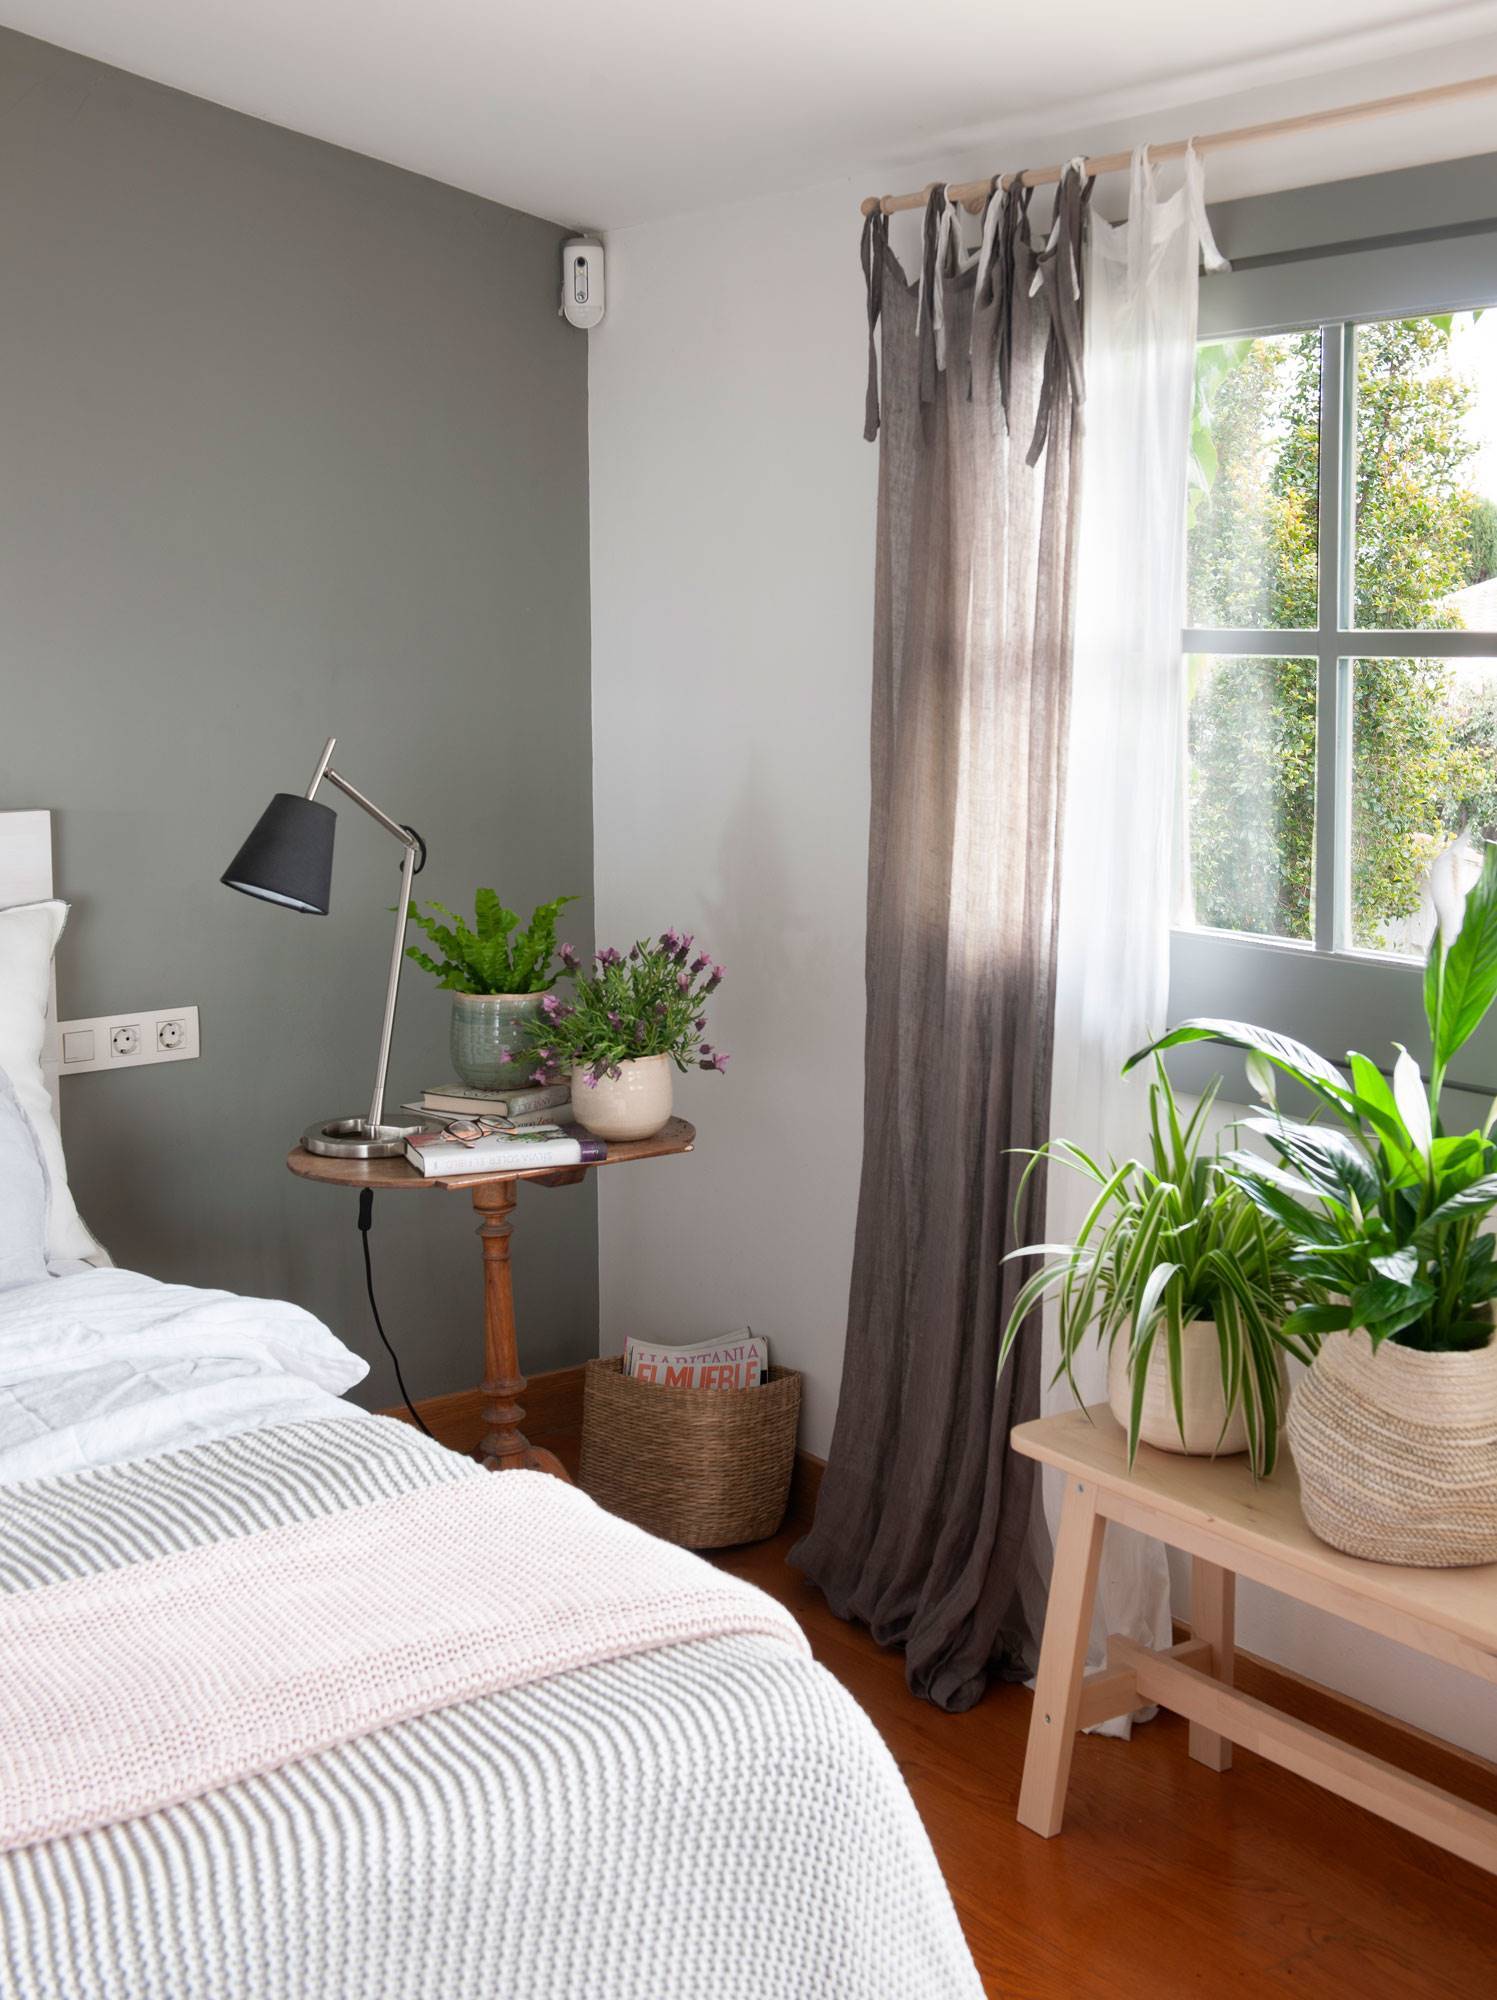 dormitorio-decorado-con-plantas-y-pared-gris-00506948-o dff84dc9 1497x2000